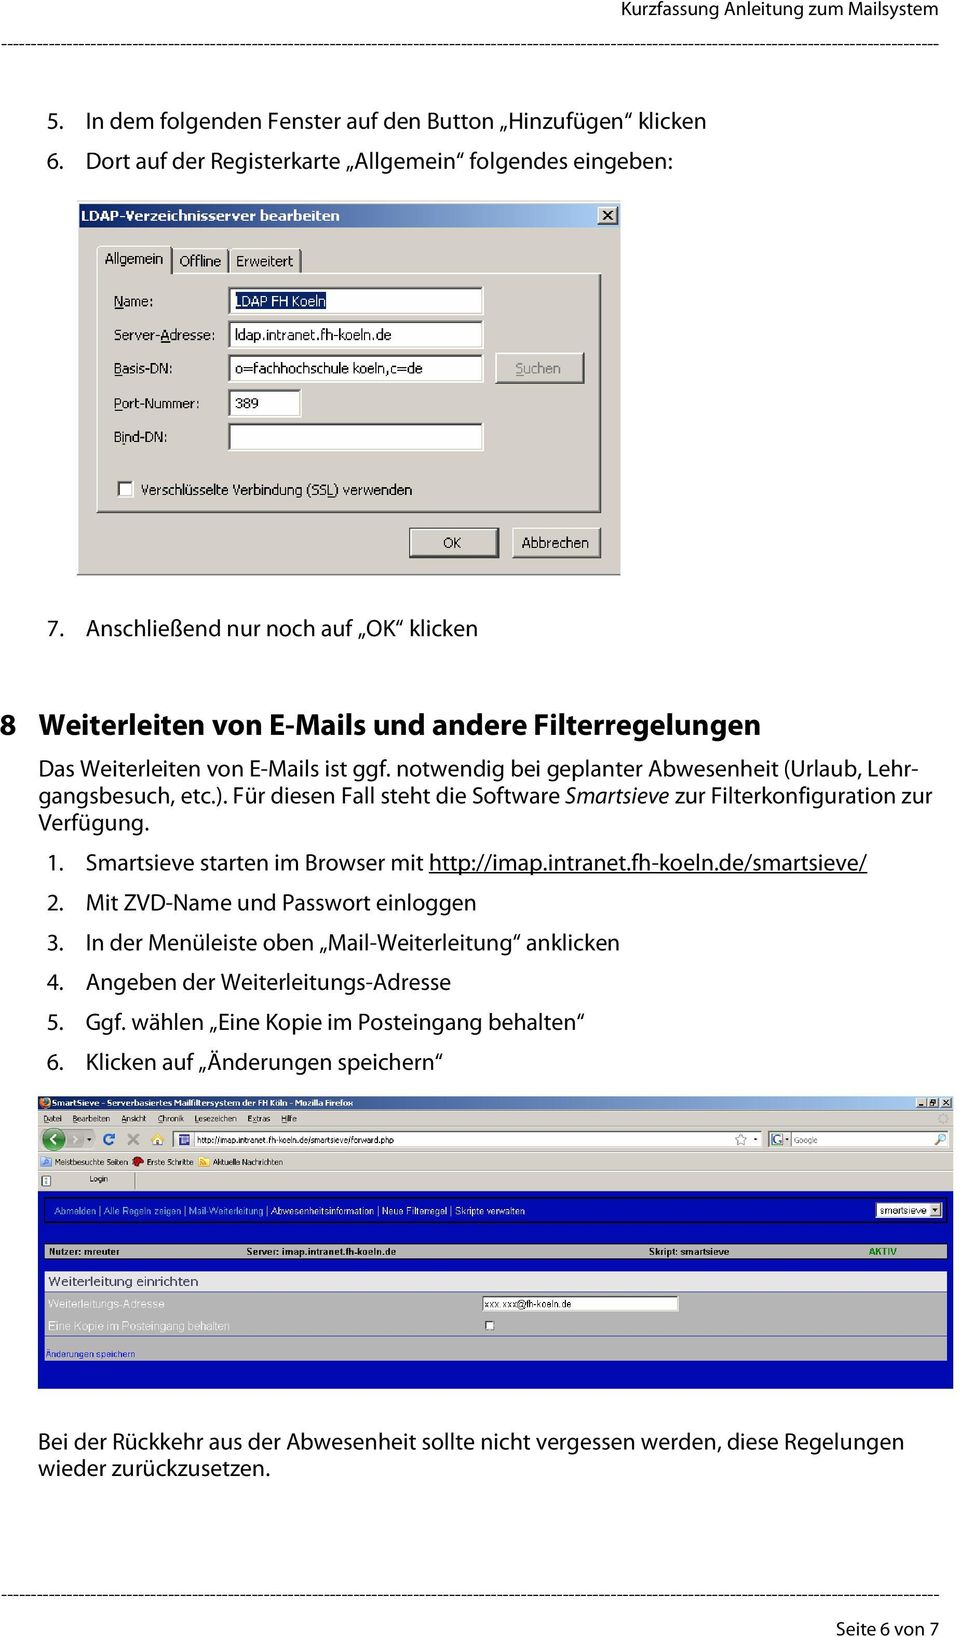 Für diesen Fall steht die Software Smartsieve zur Filterkonfiguration zur Verfügung. 1. Smartsieve starten im Browser mit http://imap.intranet.fh-koeln.de/smartsieve/ 2.